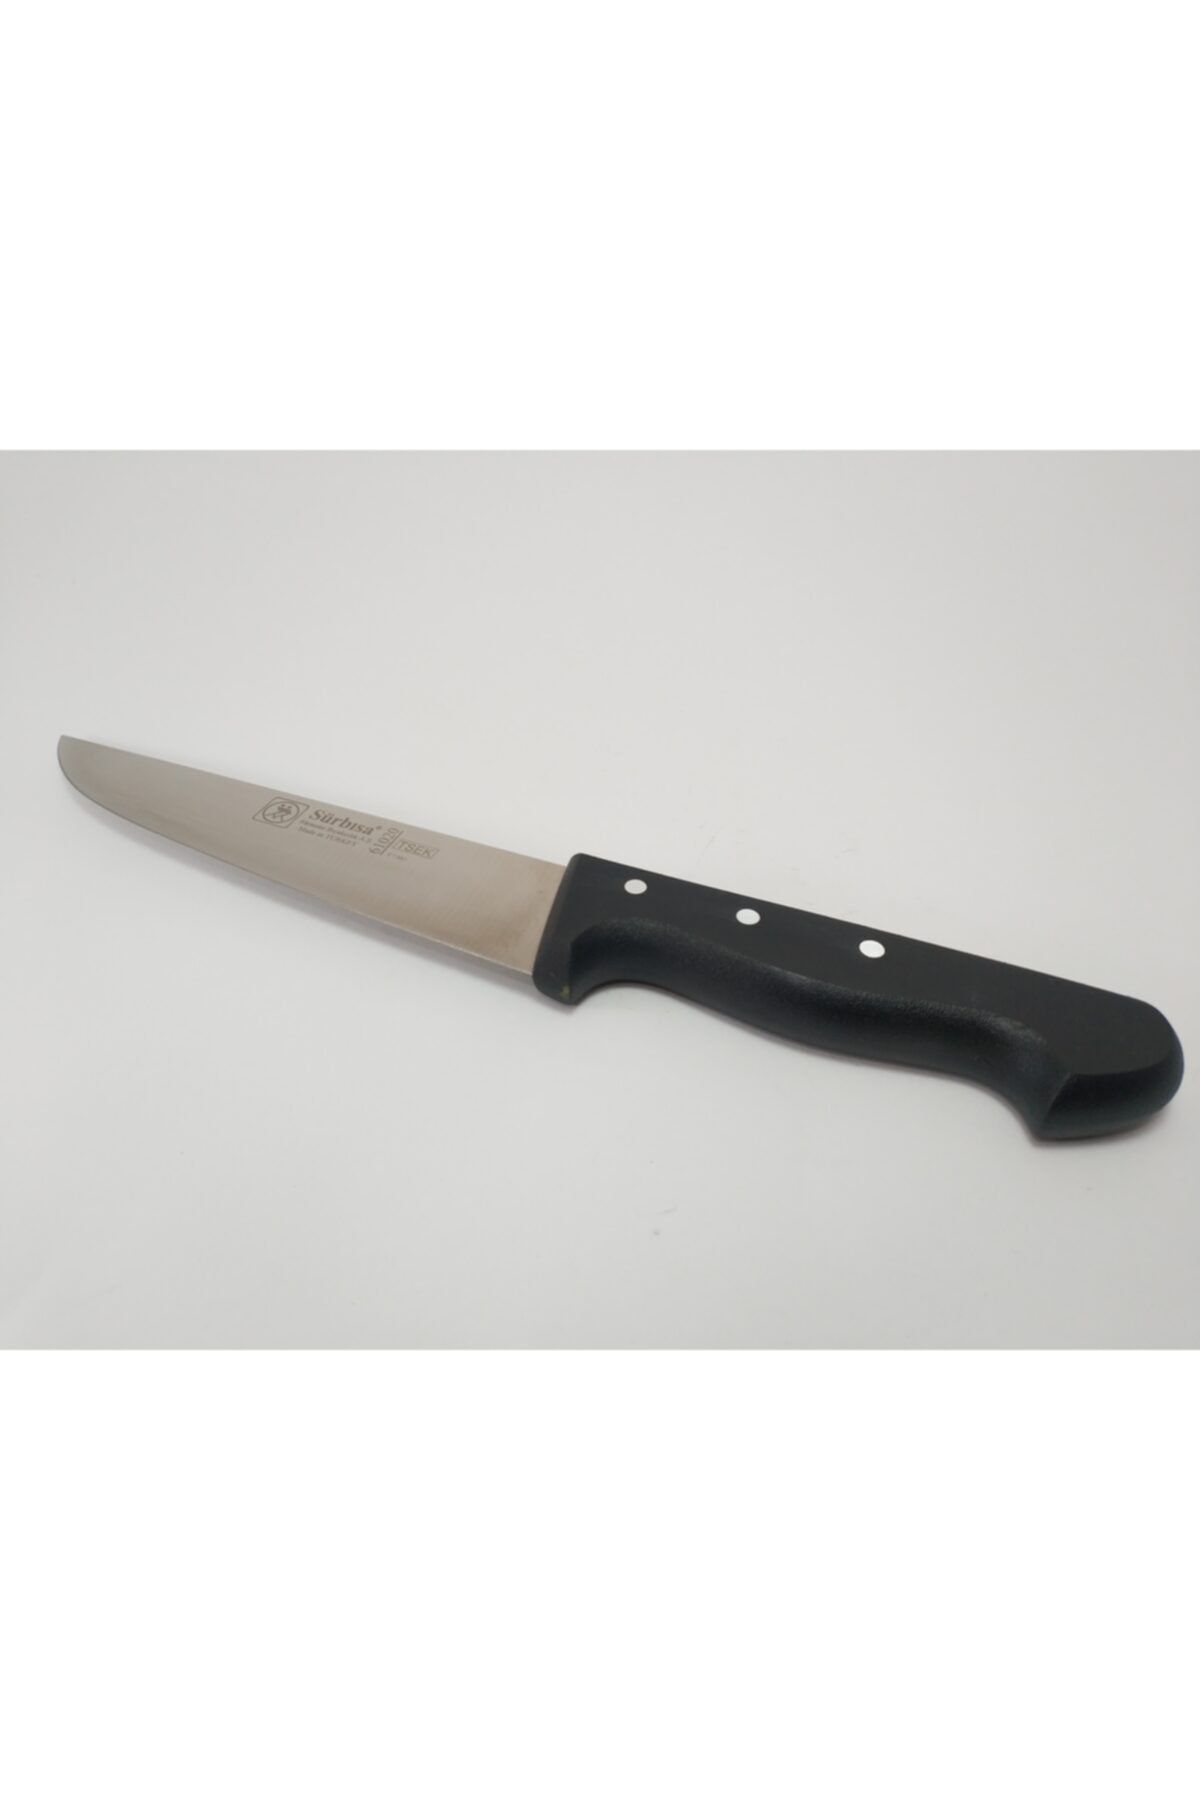 Sürbisa Mutfak Bıçağı 61020